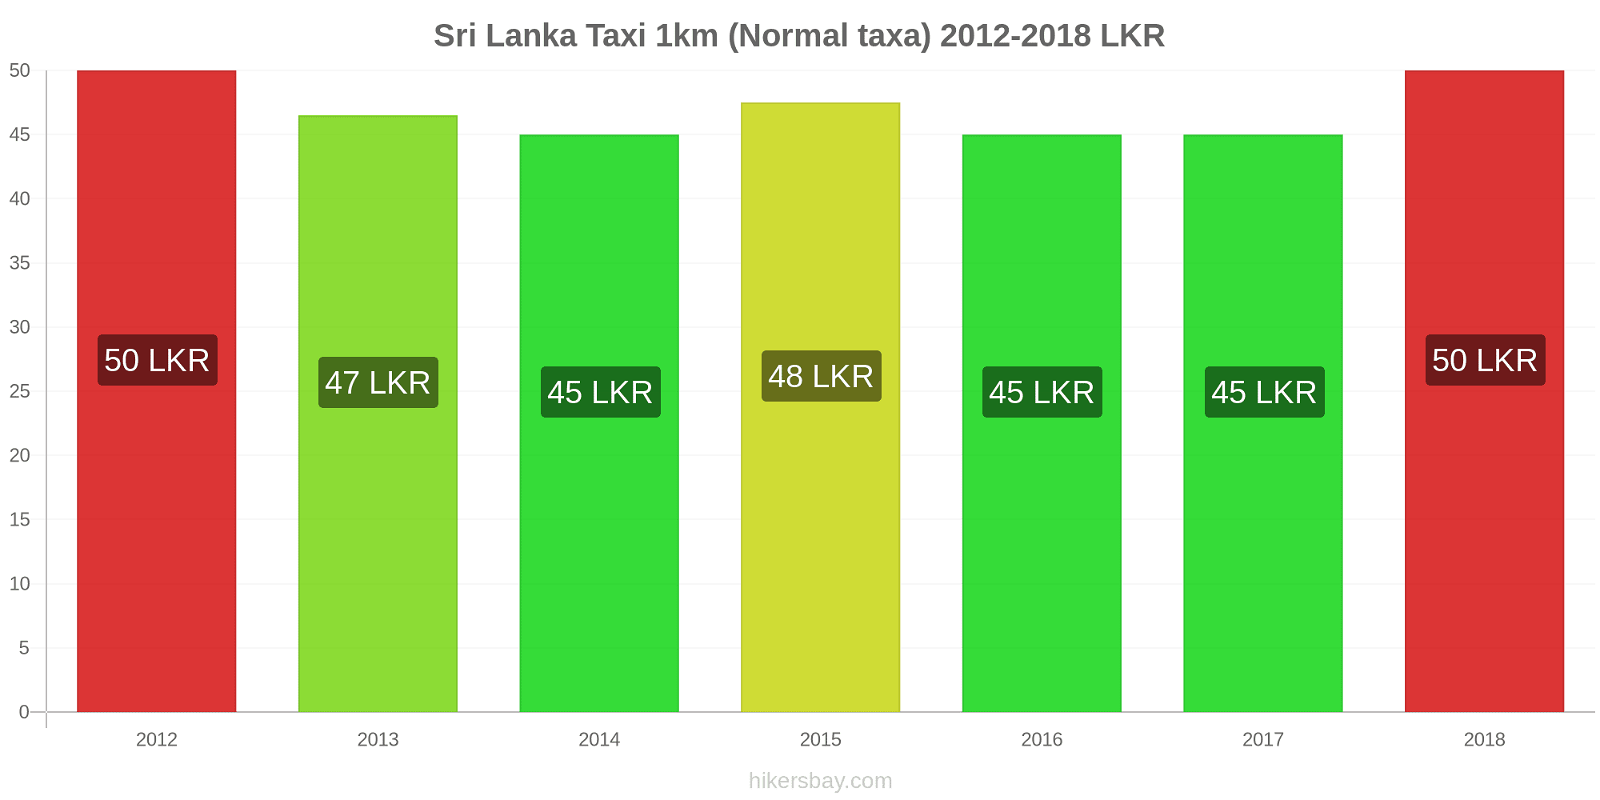 Sri Lanka prisändringar Taxi 1km (Normal taxa) hikersbay.com